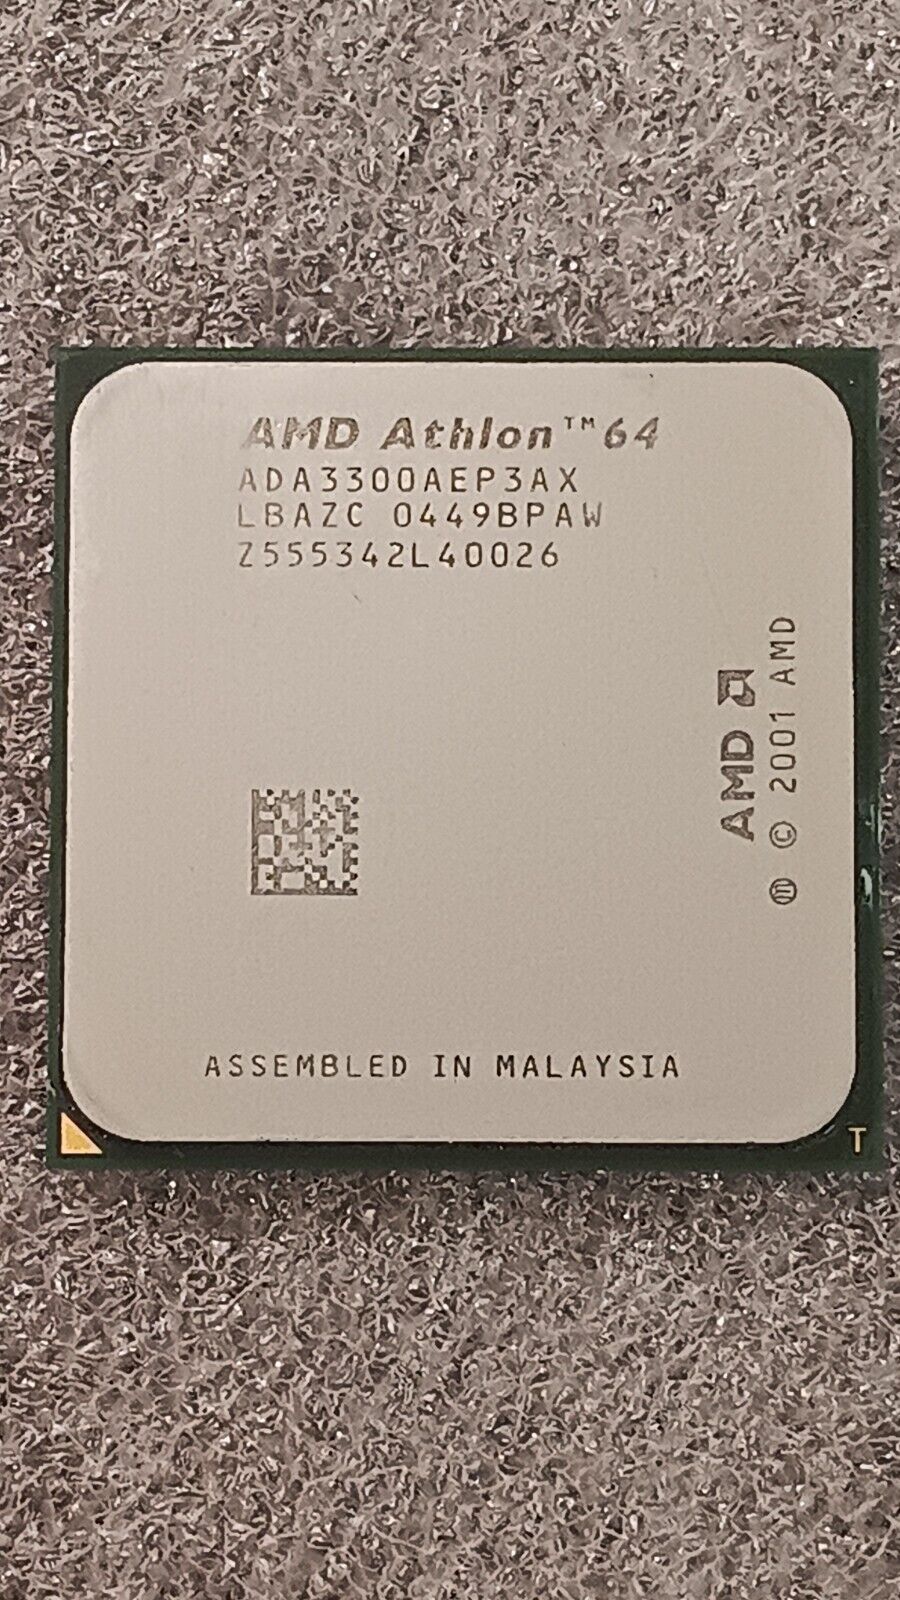 ADA3300AEP3AX AMD ATHLON 64 3300+ SOCKET 754 2.40GHZ